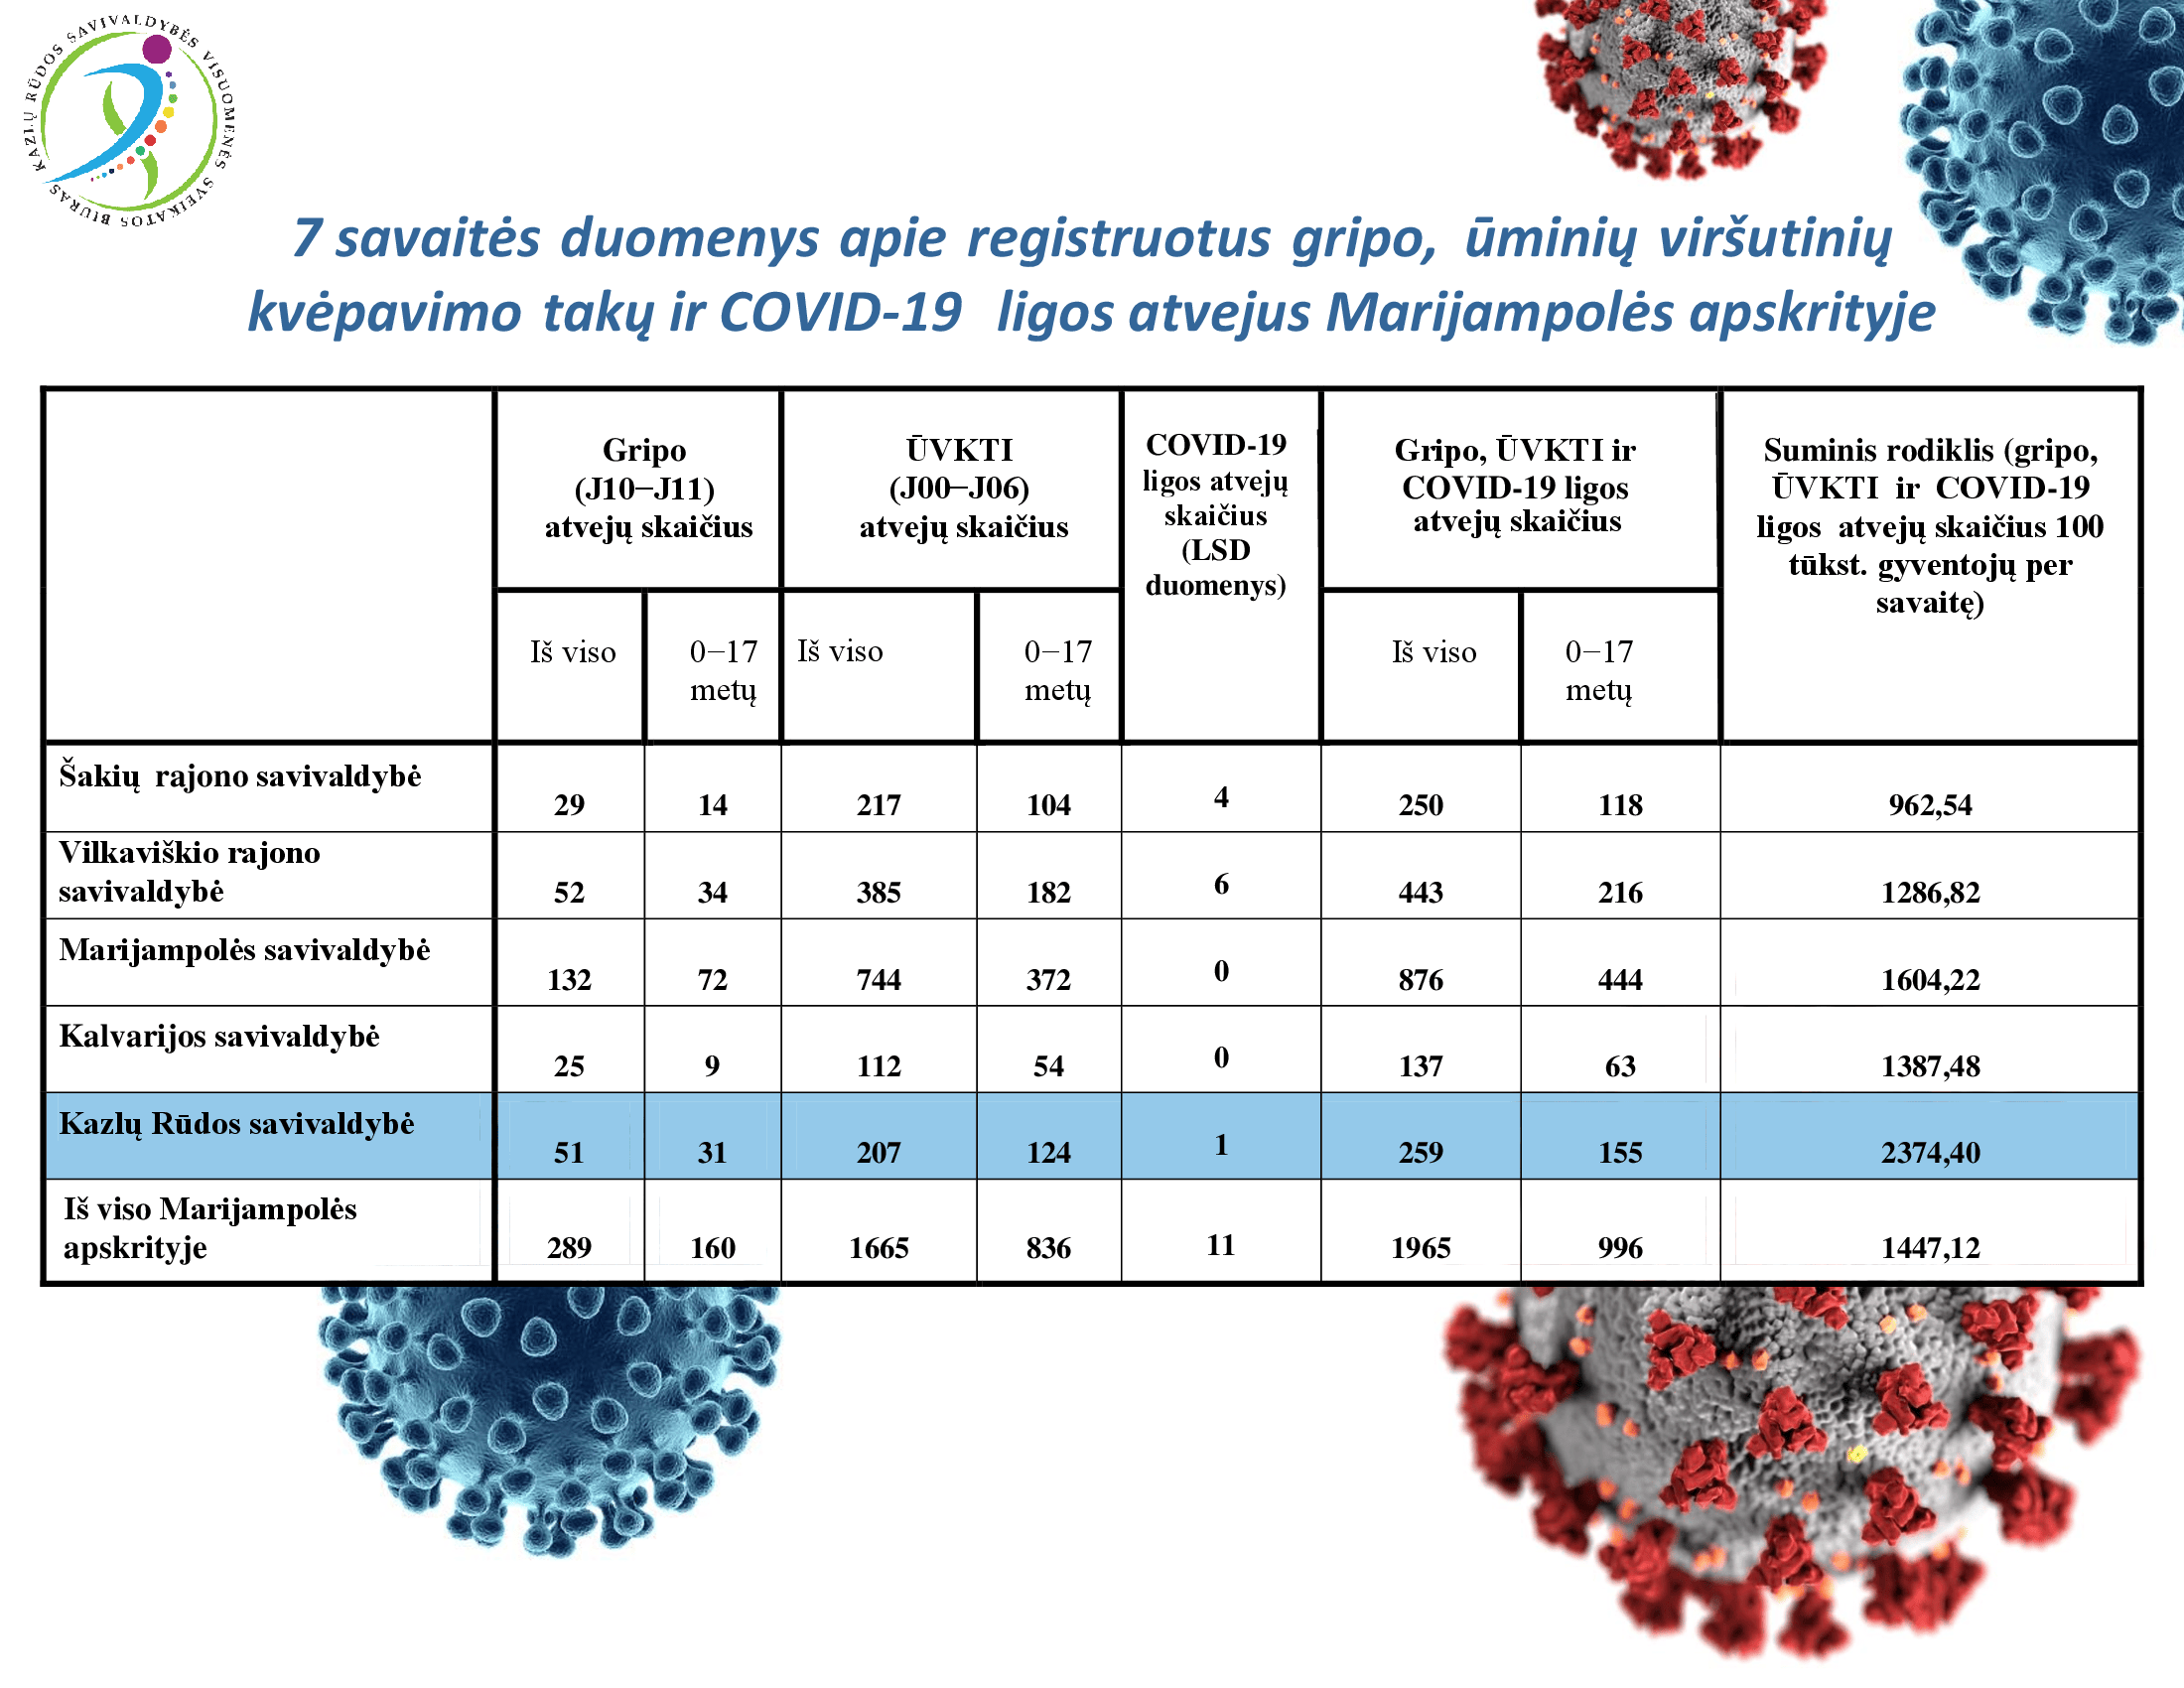 7-savaites-duomenys-apie-registruotus-gripo,-uminiu-virsutiniu-kvepavimo-taku-ir-covid-19-ligos-atvejus-marijampoles-apskrityje-